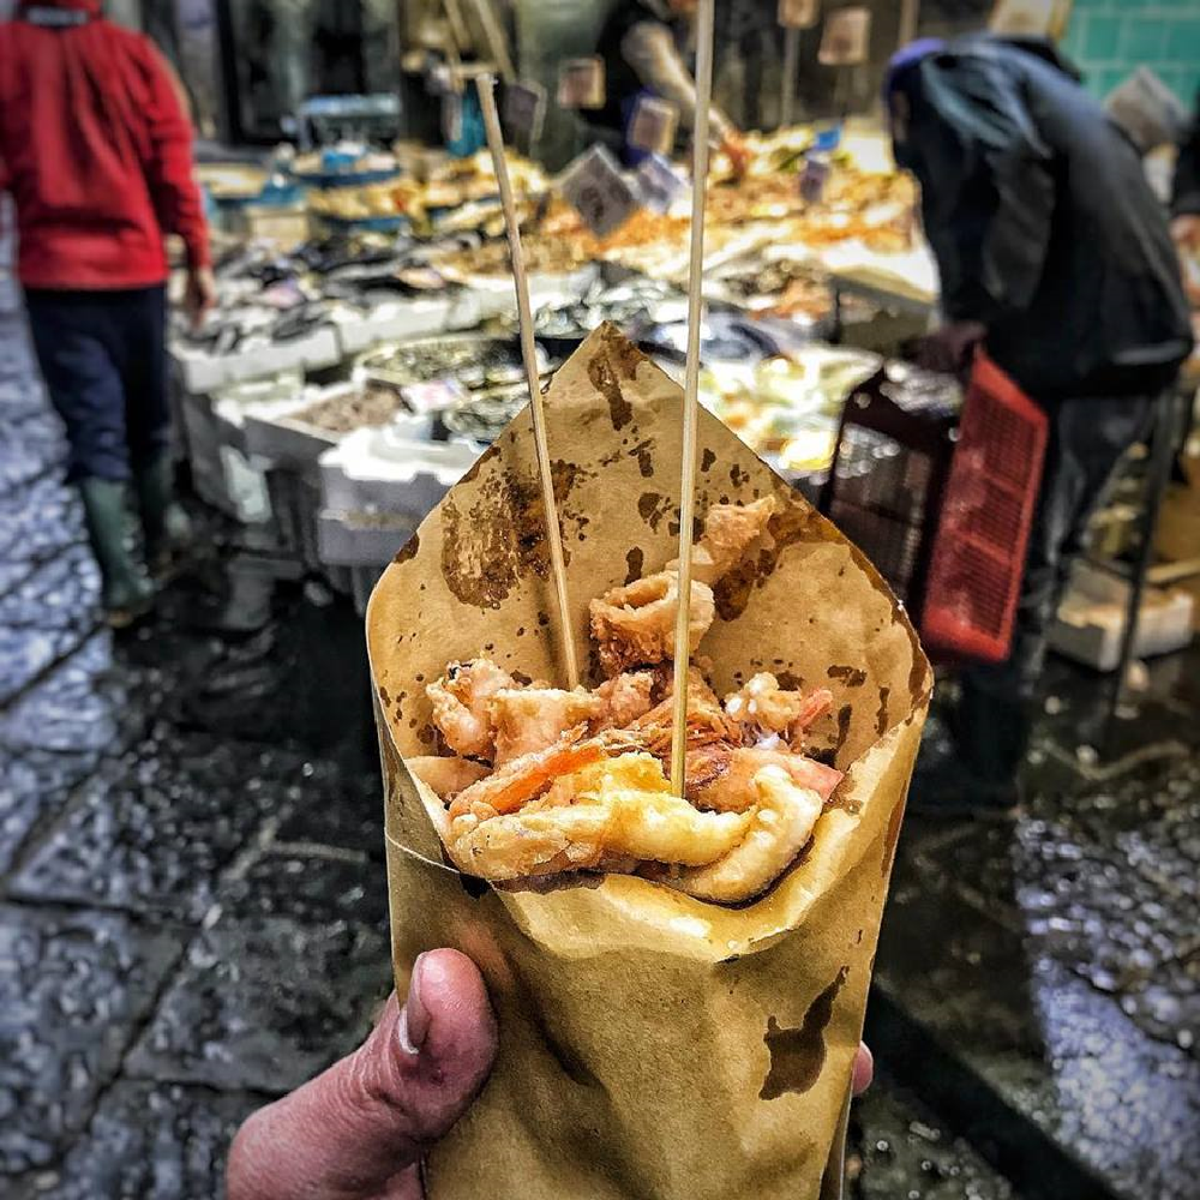 Naples Street Food Tour